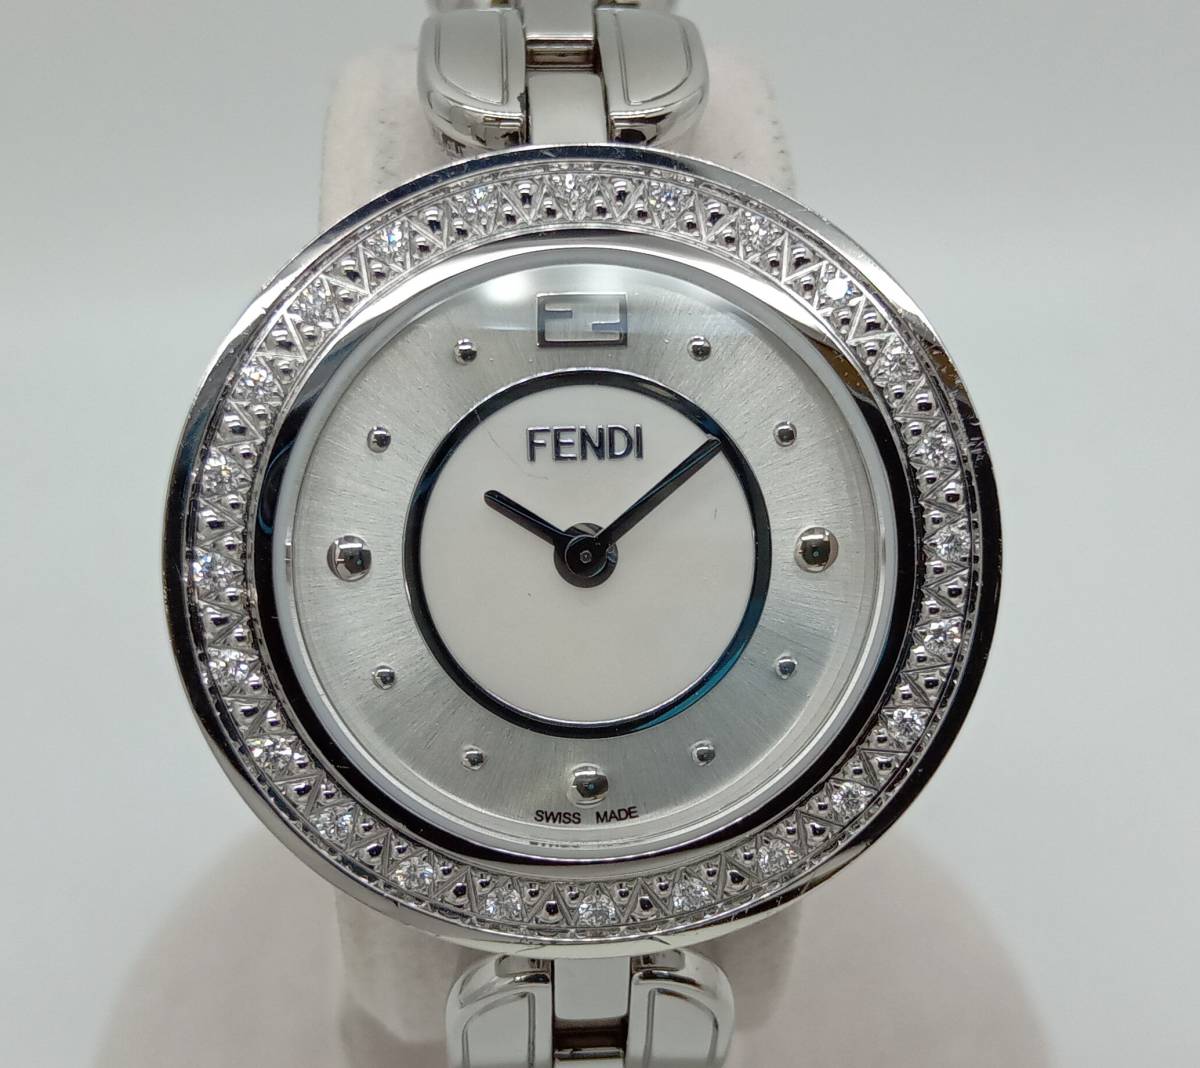 FENDI フェンディ クォーツ レディース 腕時計 マイウェイ ダイヤベゼル ラウンド シルバー文字盤